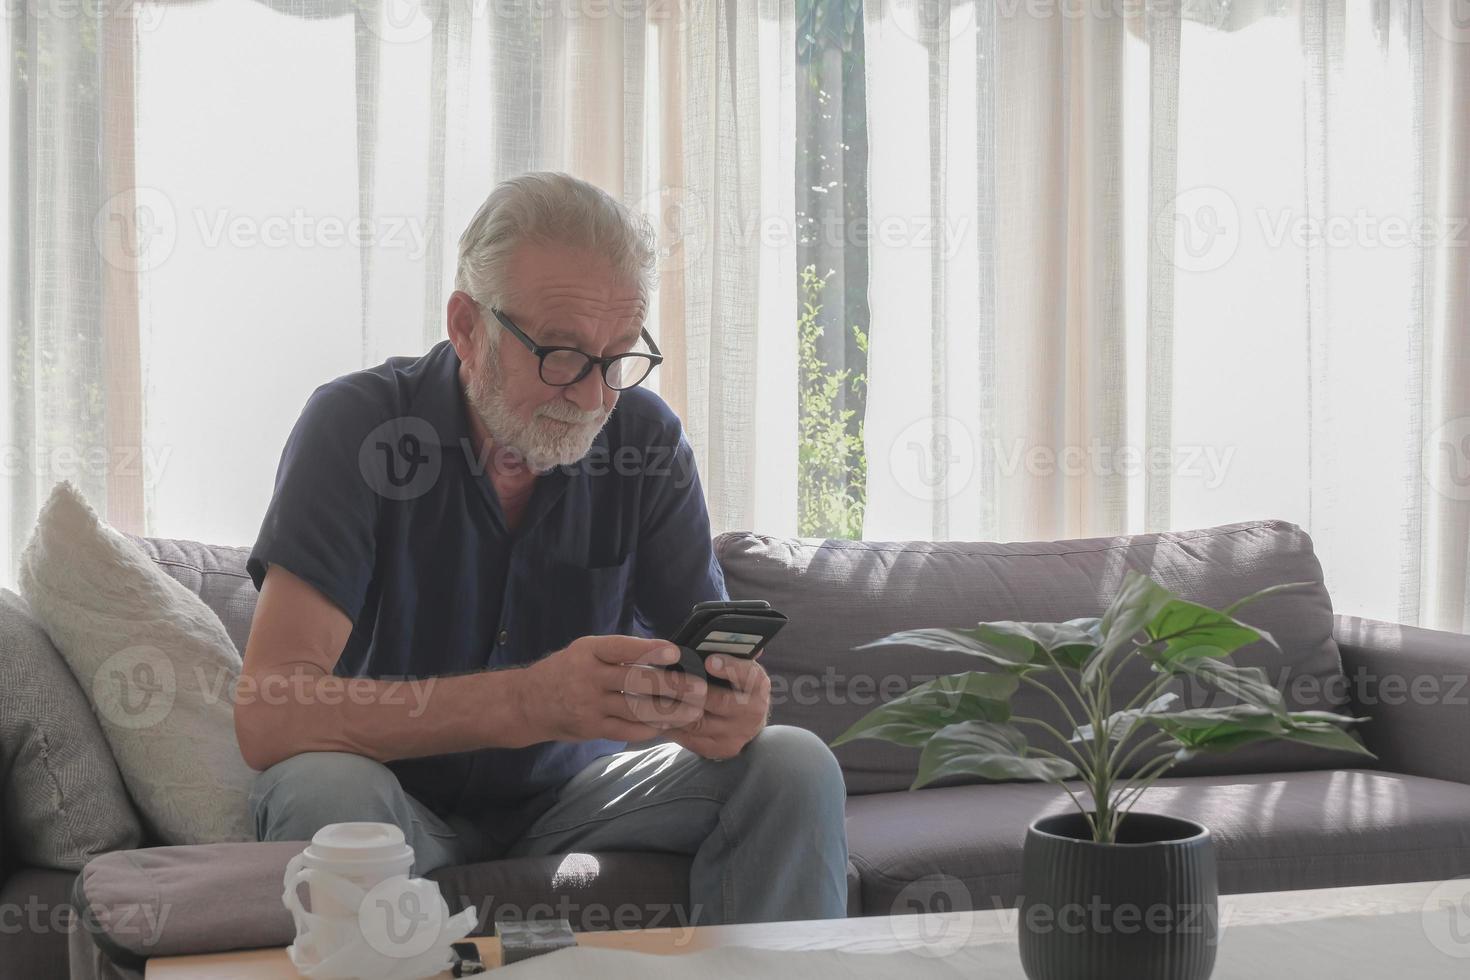 photographie de style de vie d'un vieil homme caucasien vivant seul en vacances, utilisant un smartphone, une cigarette et une tasse de café posés sur la table dans la maison confortable du salon et la journée ensoleillée. photo